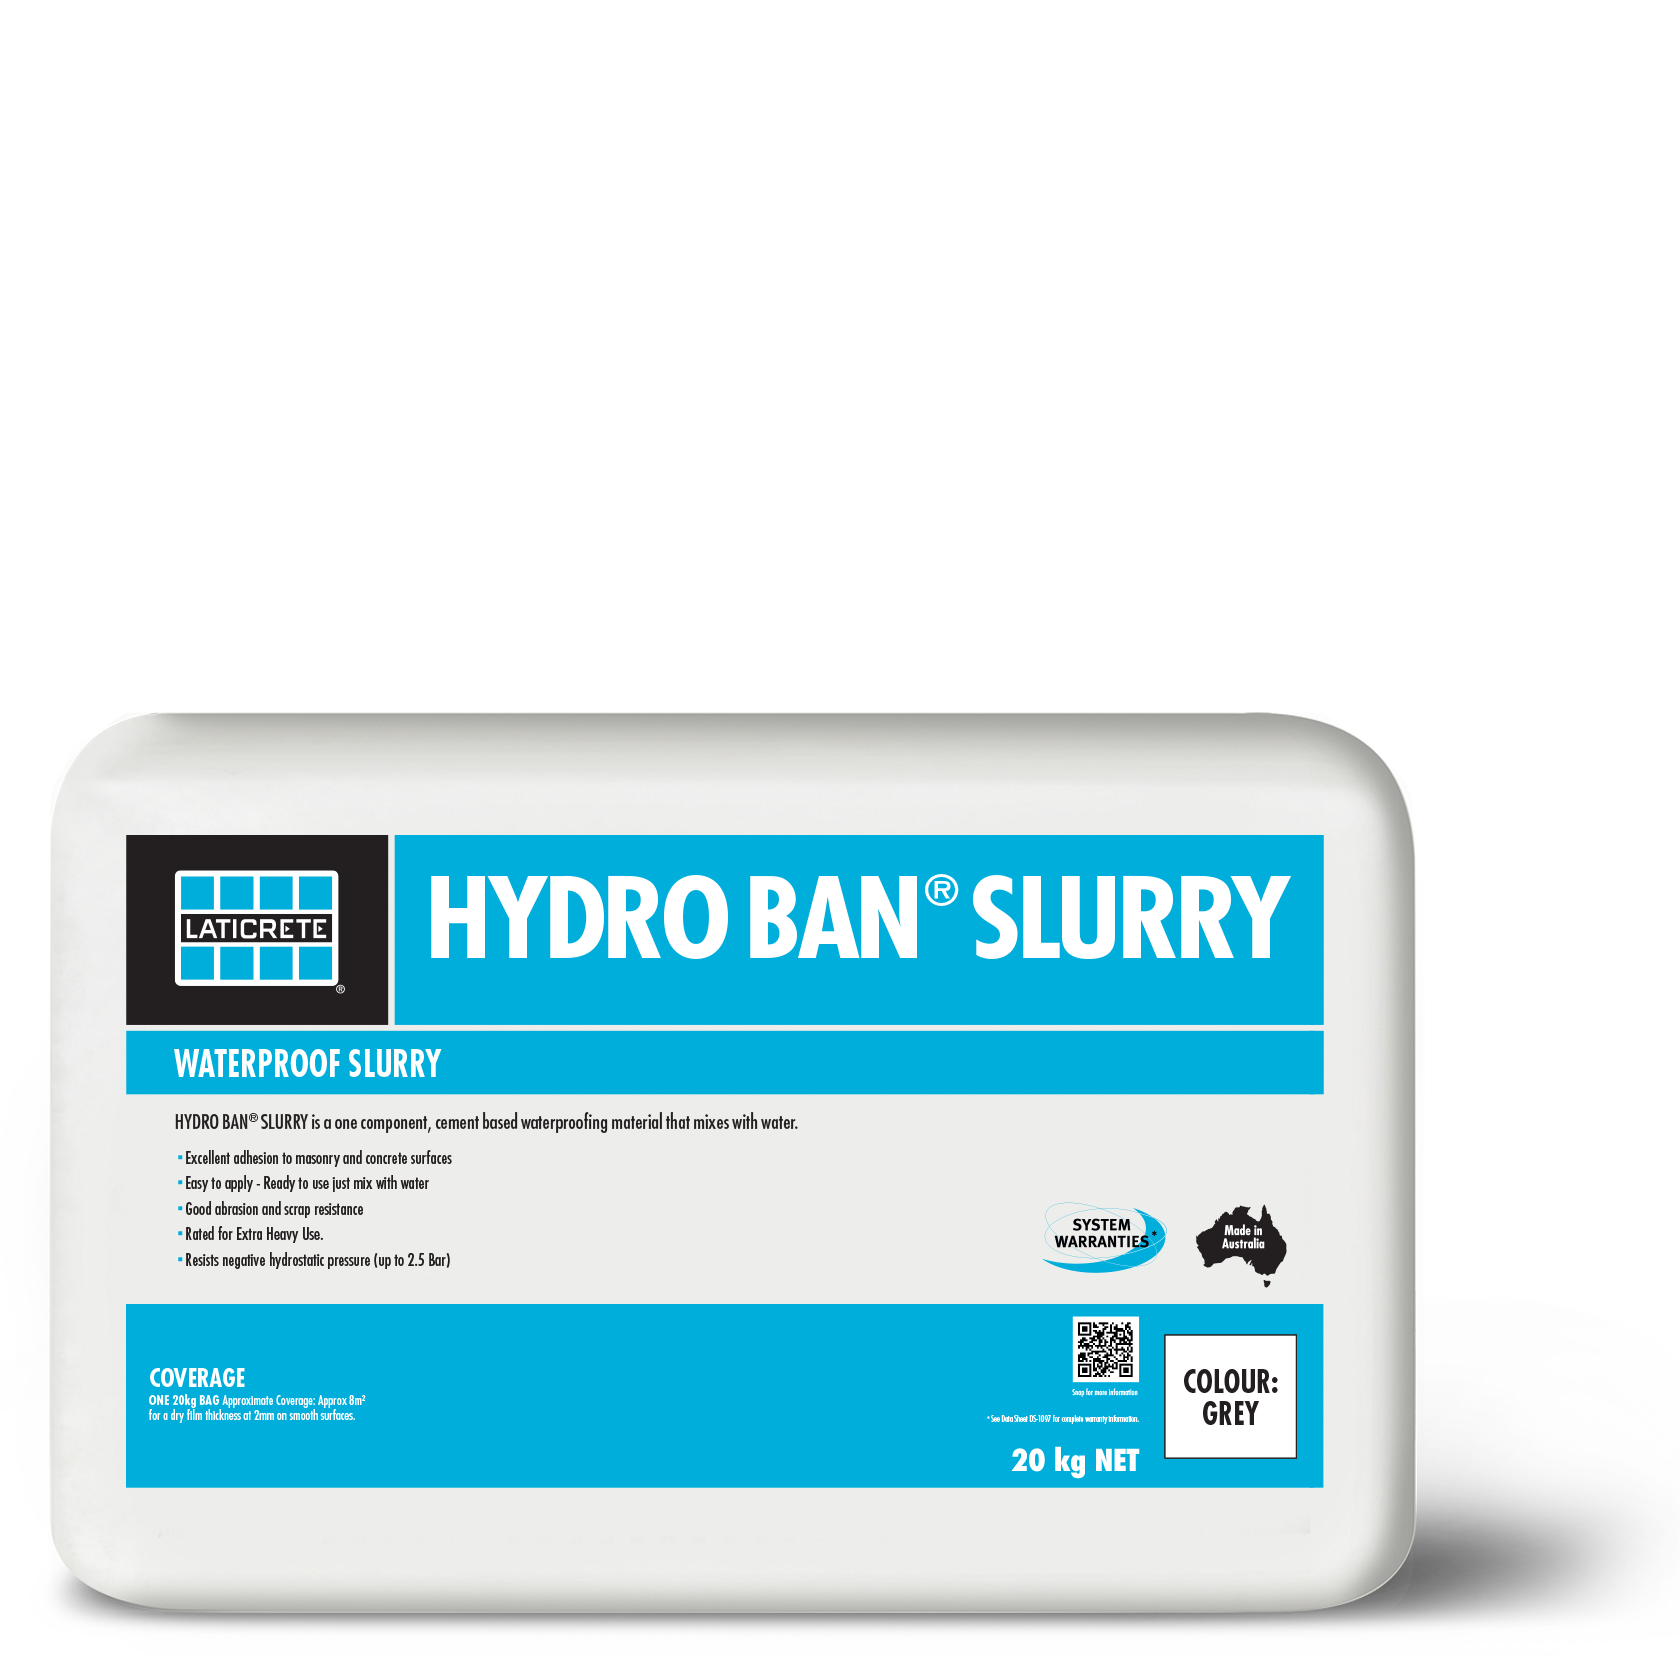 HYDRO BAN® SLURRY